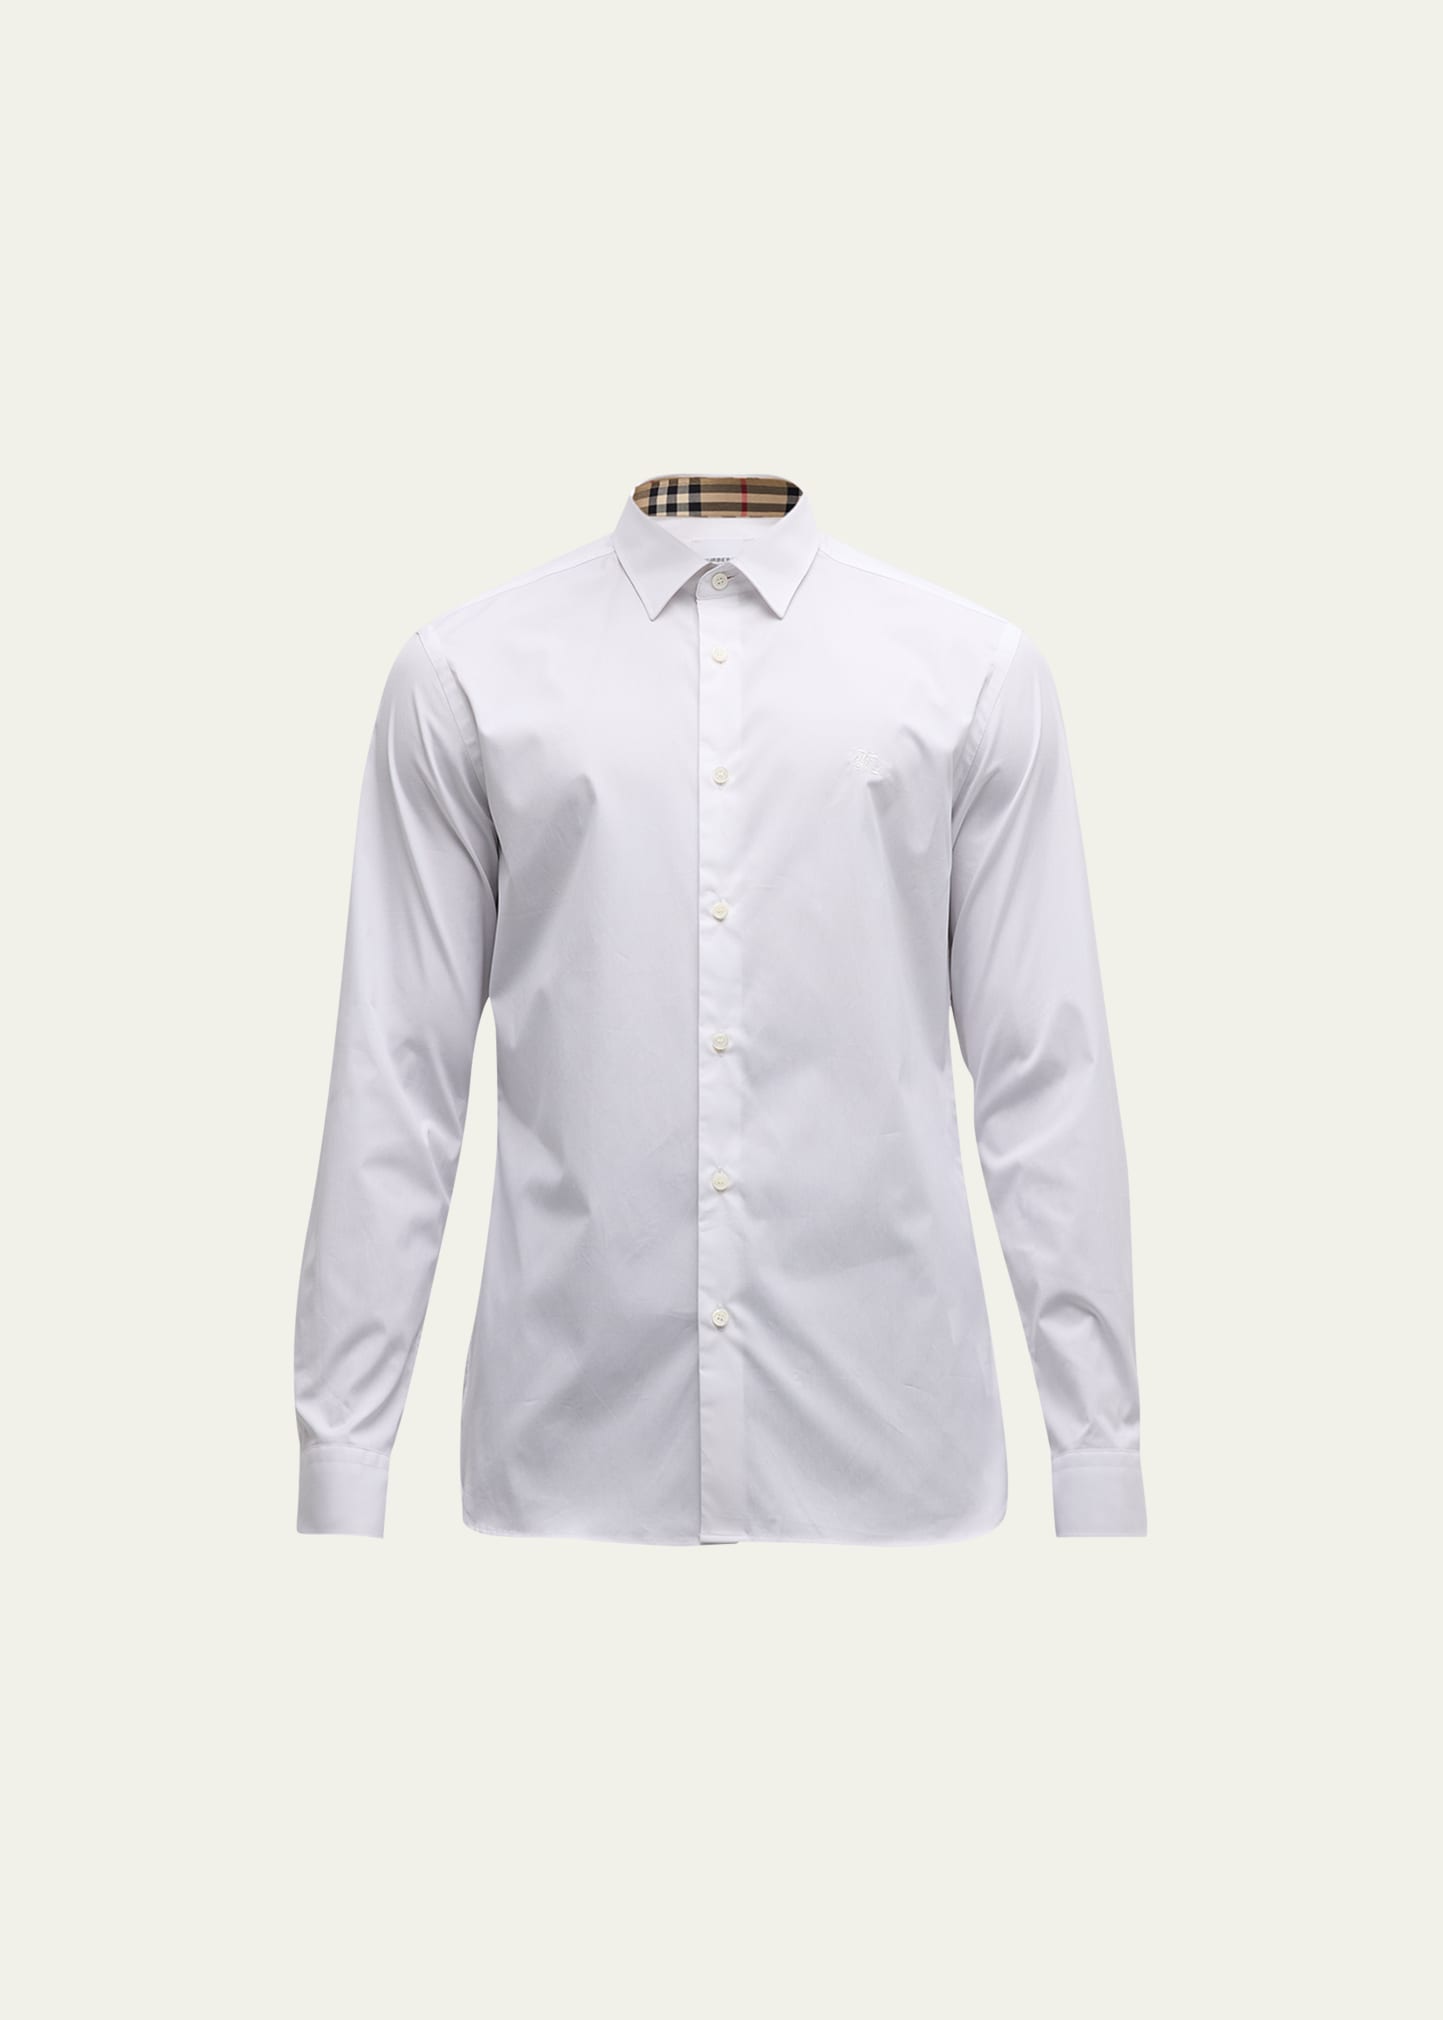 Burberry Men's Sherfield Sport Shirt In White